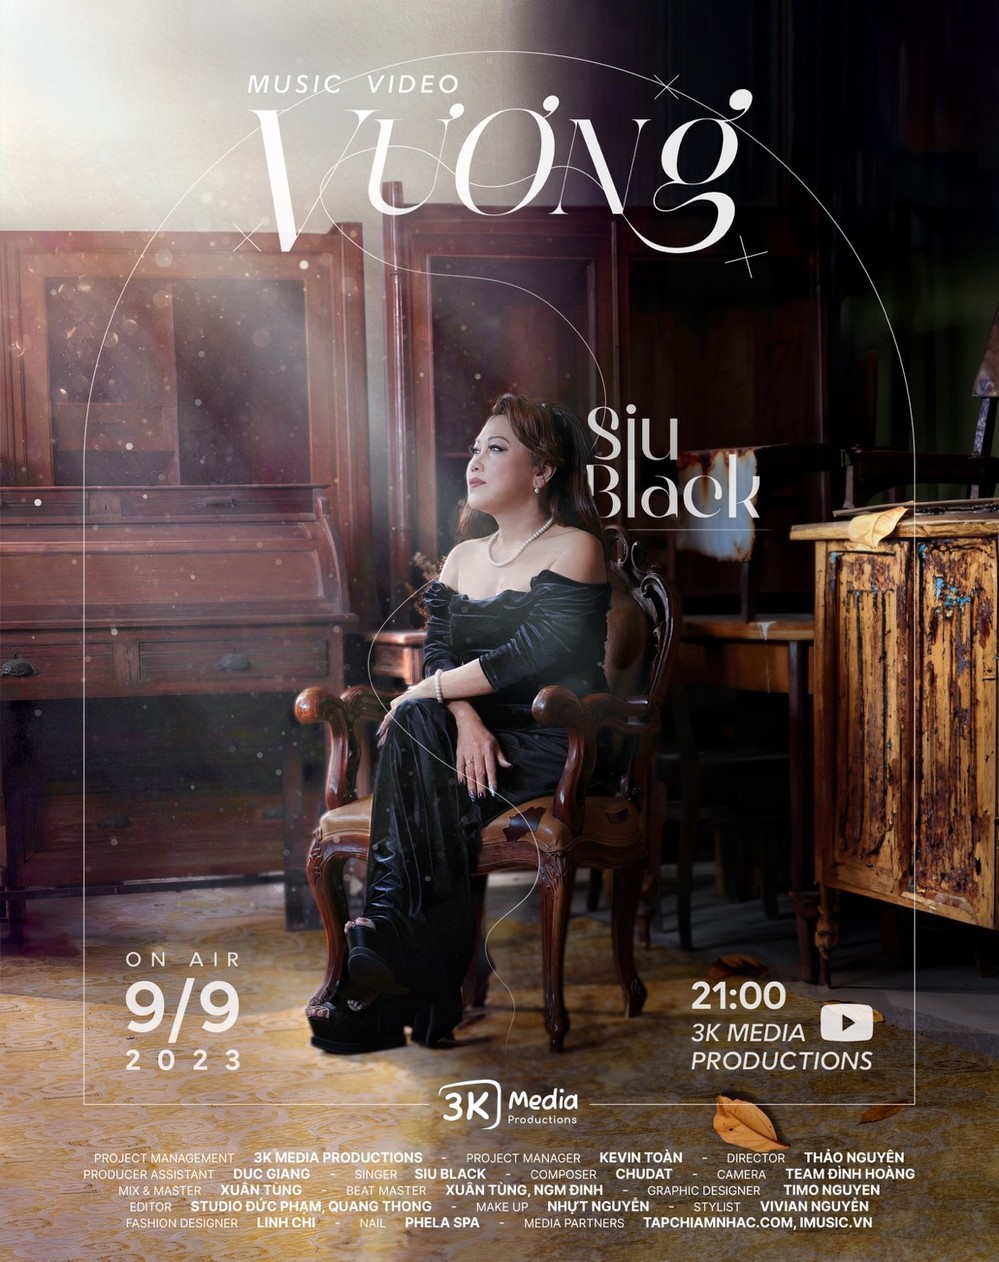 Sau “big hit” Vương, Siu Black được khán giả ví như Adele của Việt Nam - Ảnh 1.